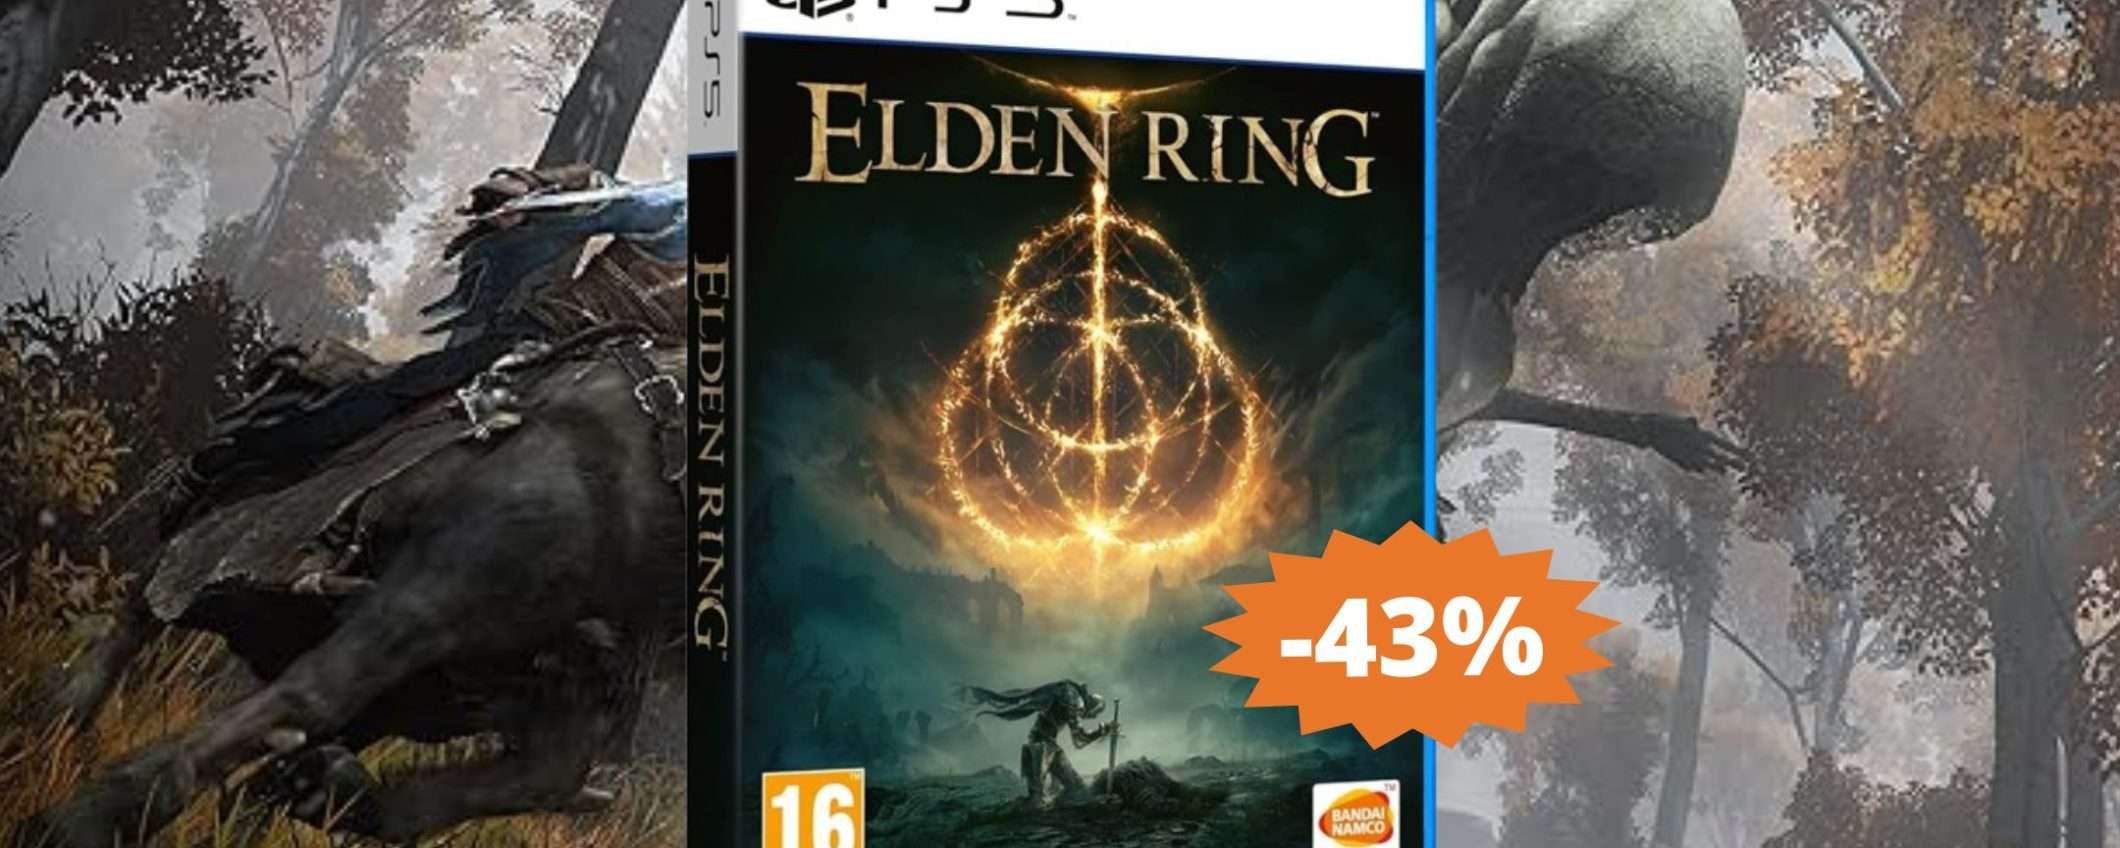 Elden Ring per PS5: un AFFARE da non perdere su Amazon (-43%)